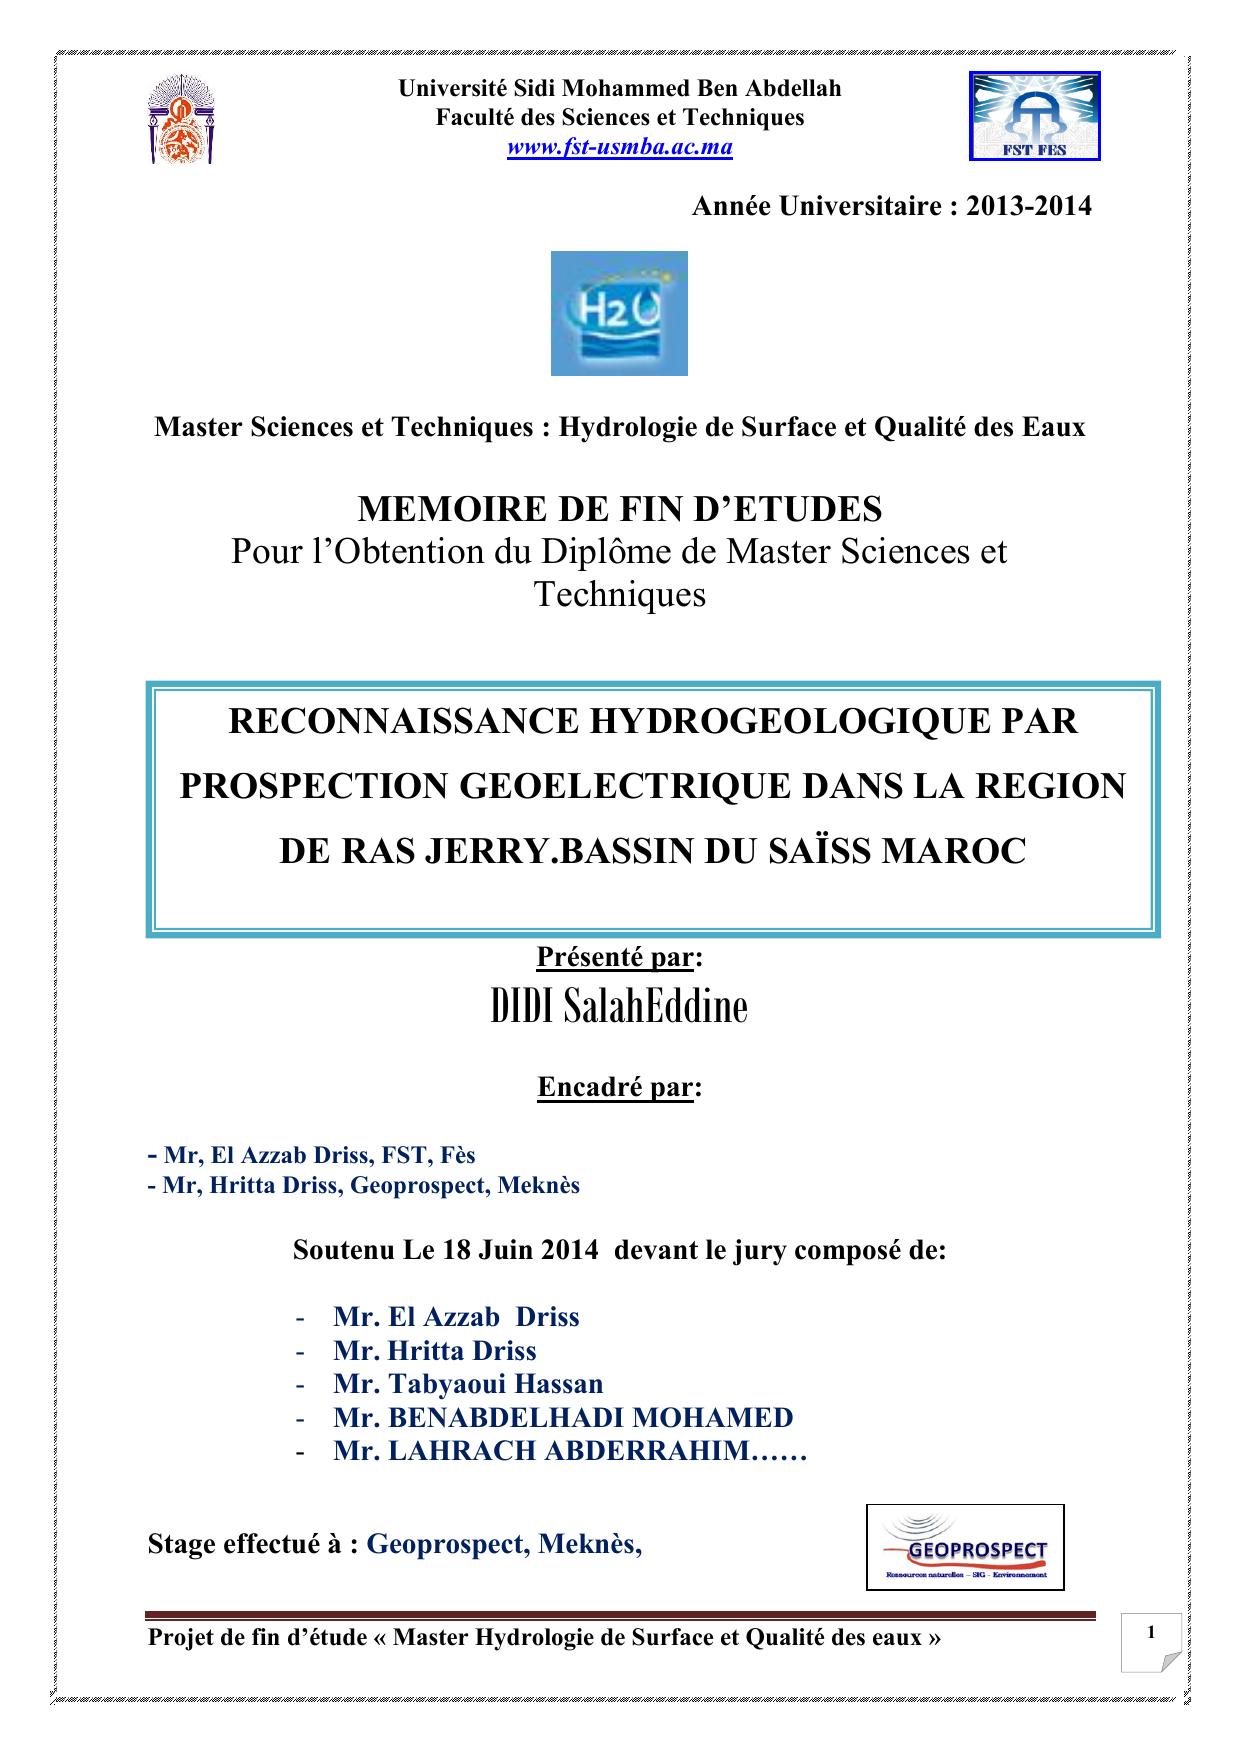 RECONNAISSANCE HYDROGEOLOGIQUE PAR PROSPECTION GEOELECTRIQUE DANS LA REGION DE RAS JERRY.BASSIN DU SAÏSS MAROC